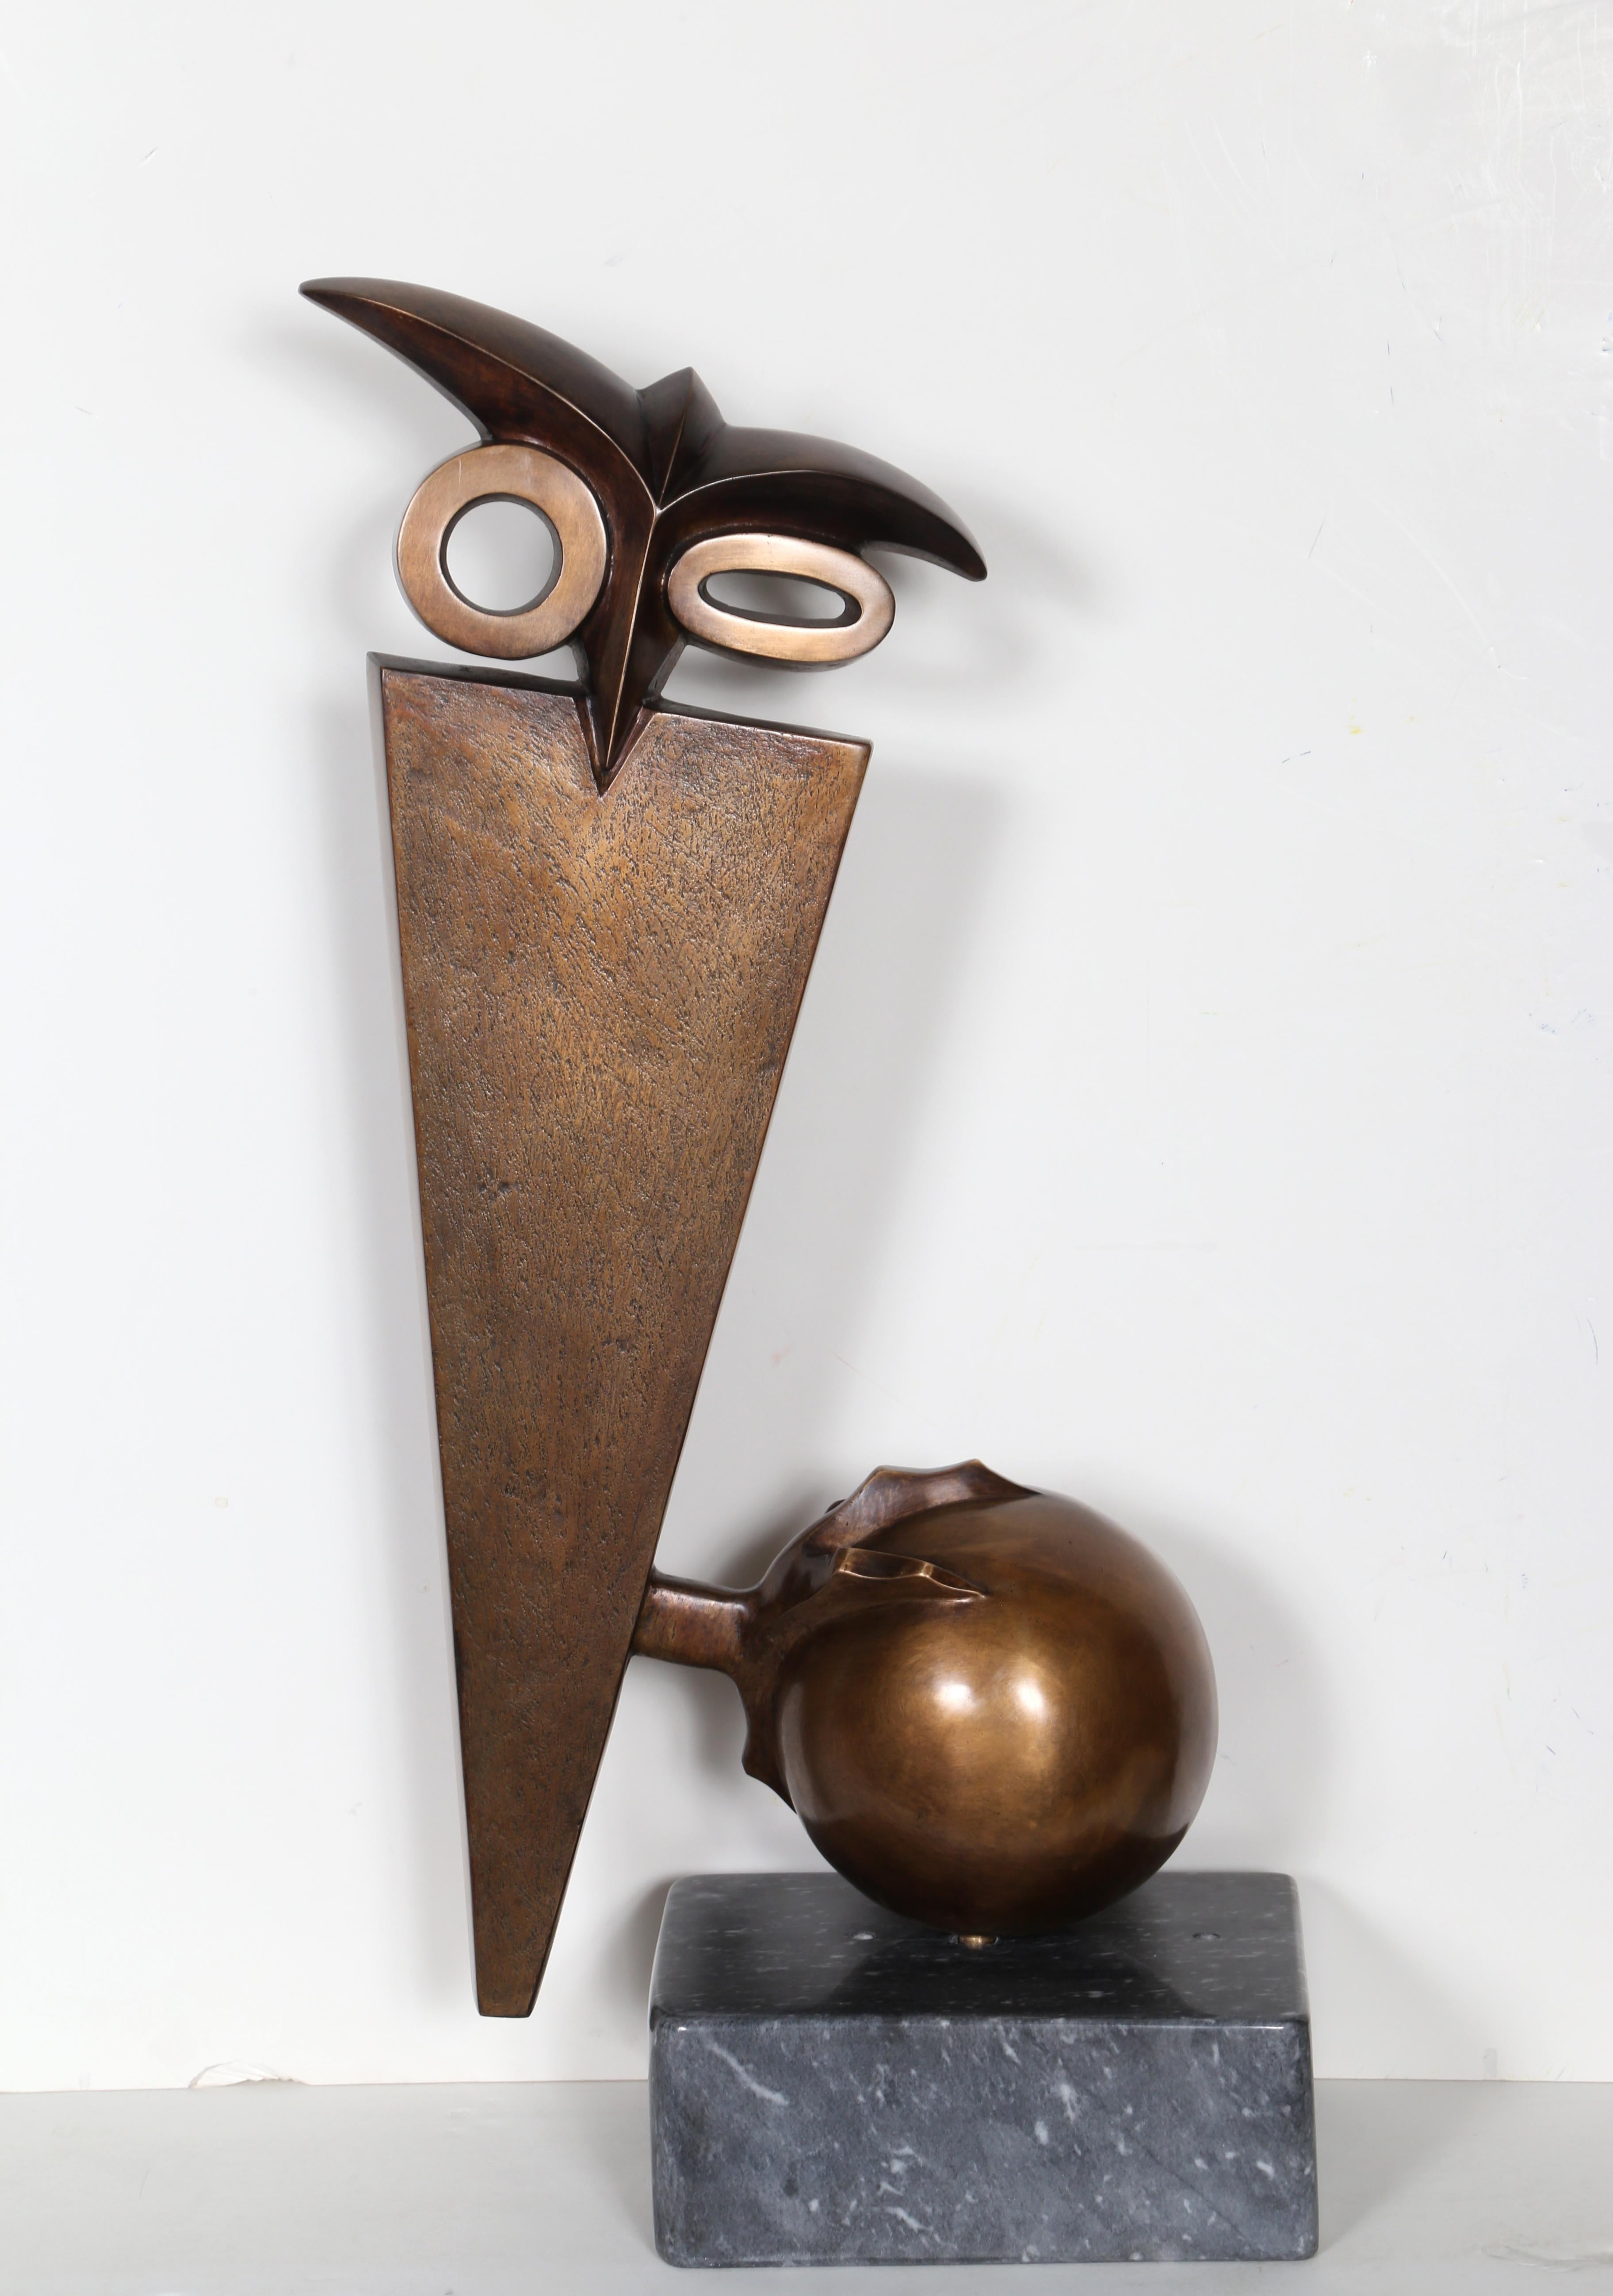 Figurative Sculpture Constantin Antonovici - Hibou perché sur boule, bronze moderne d'Antonovici, 1957